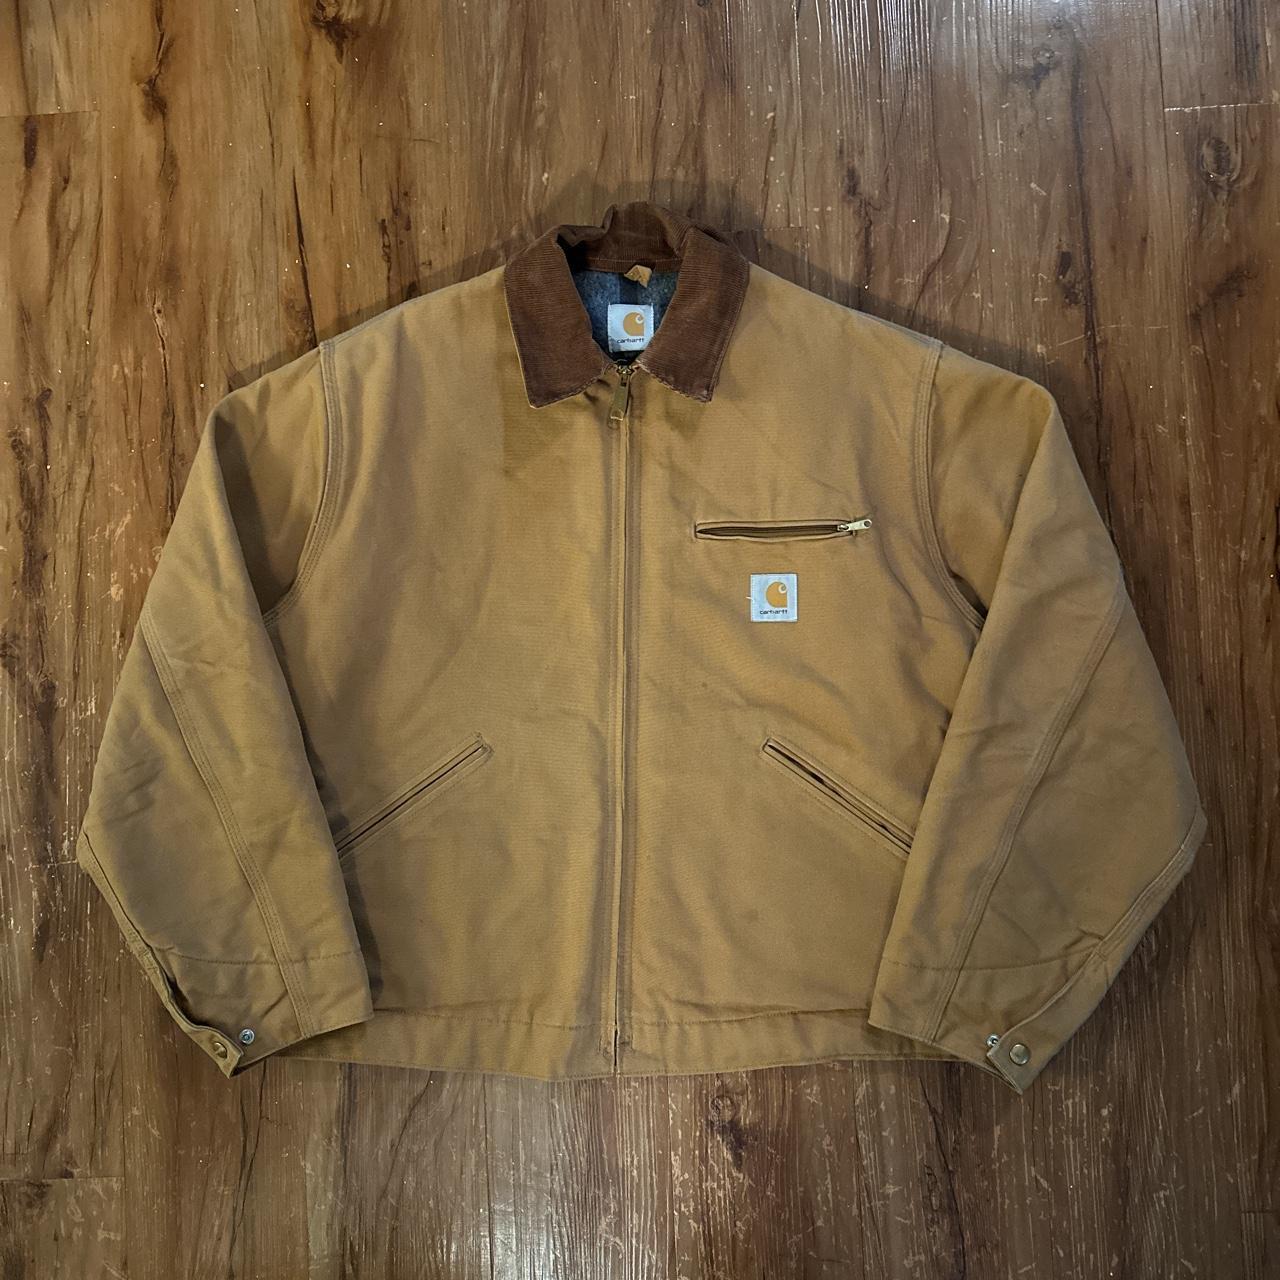 carhartt detroit jacket tan / brown colorway in... - Depop